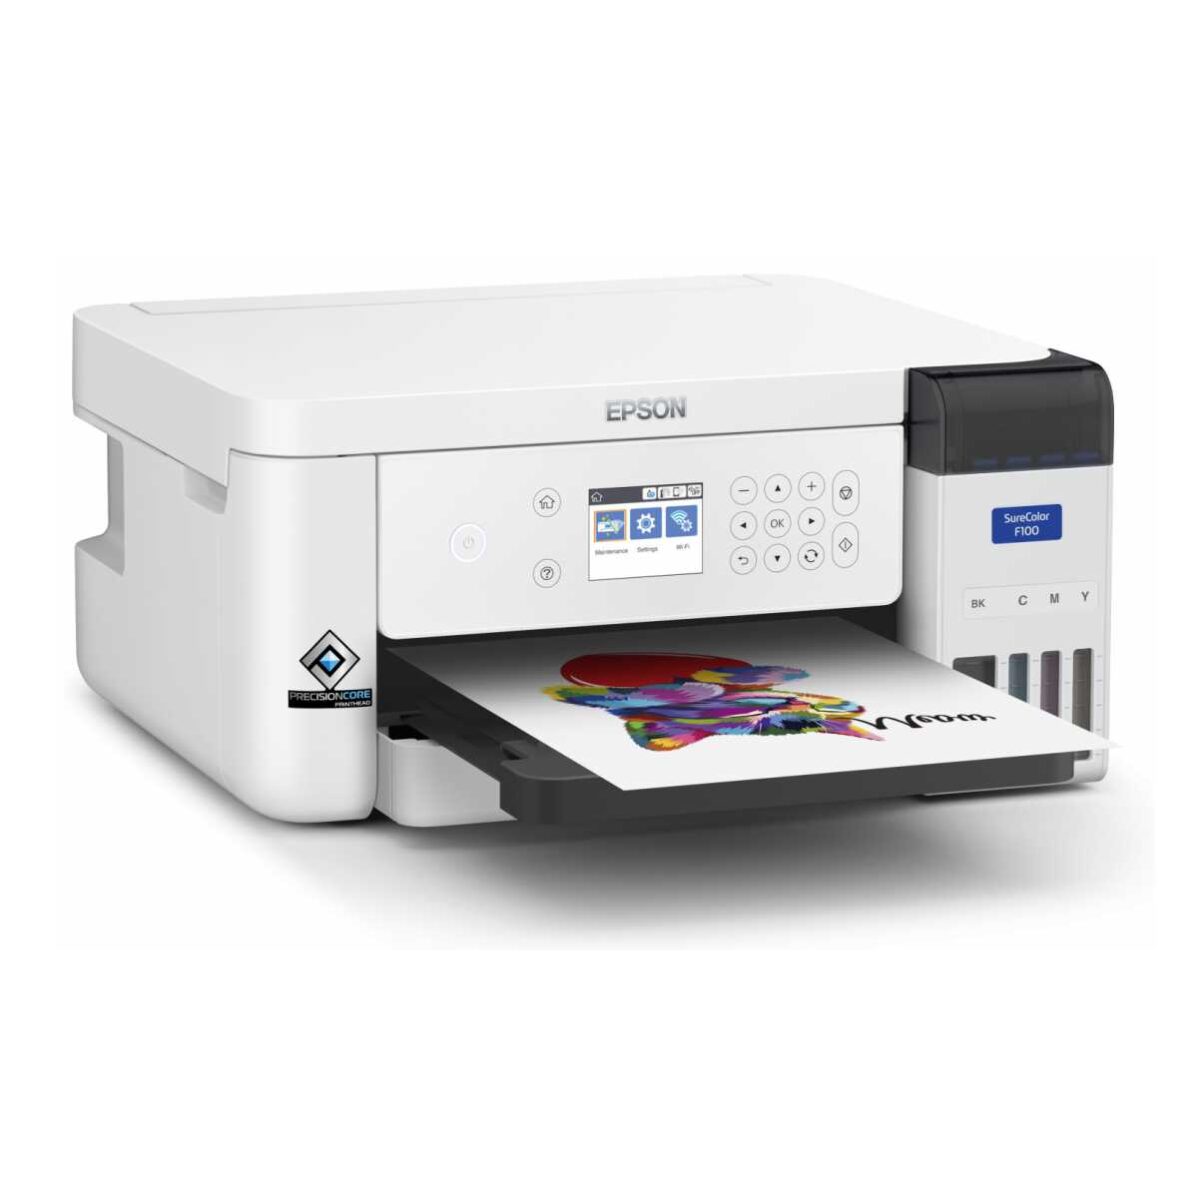 Epson SC-F100 printer